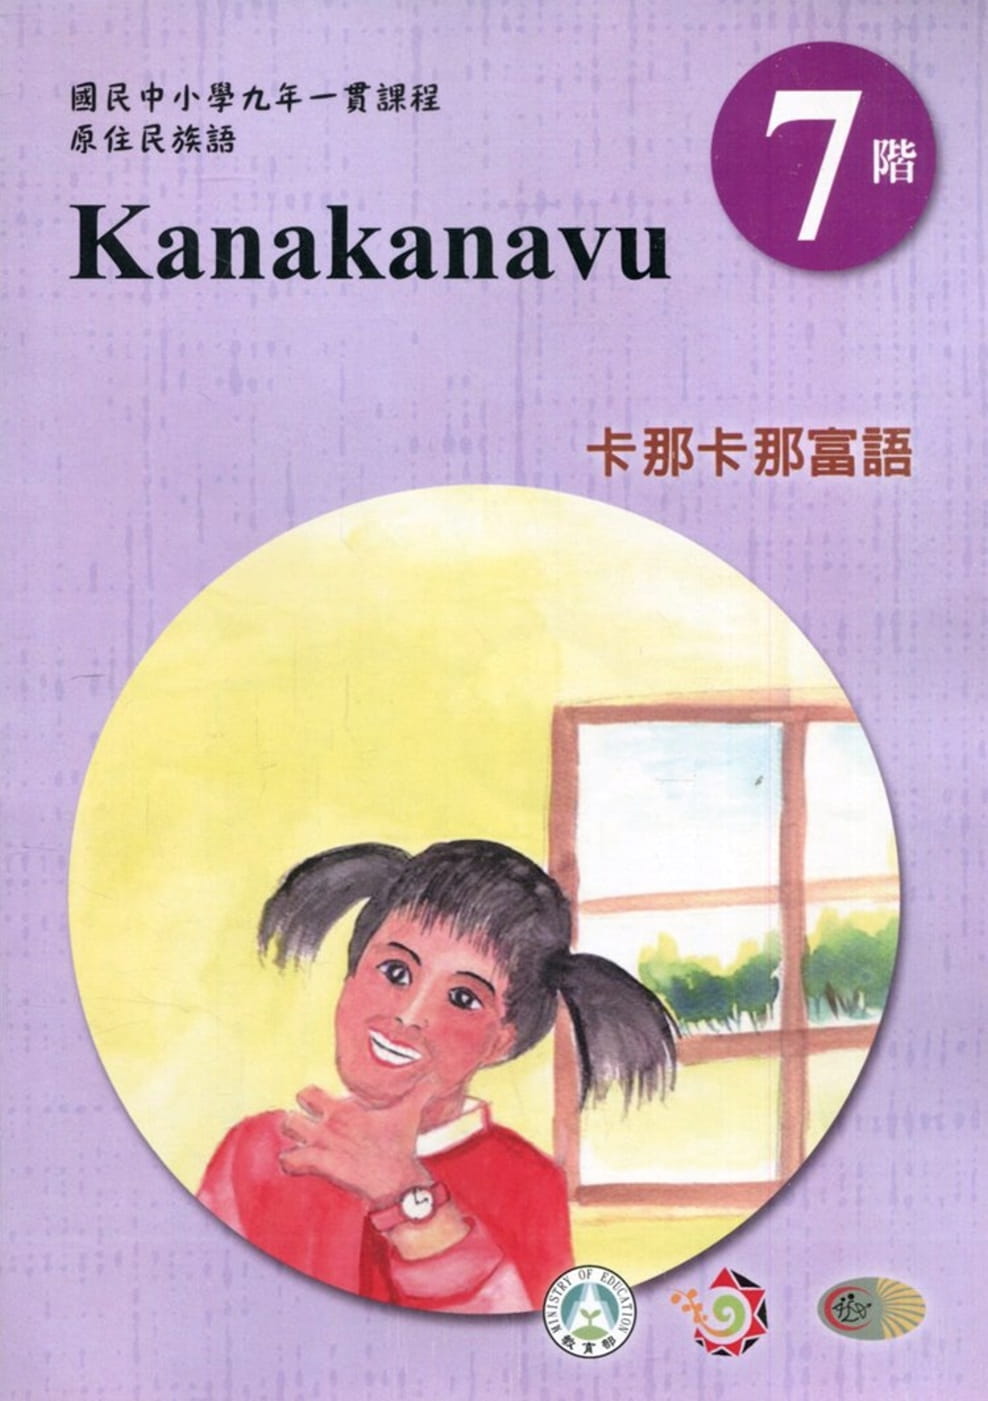 原住民族語卡那卡那富語第七階學習手冊(附光碟)2版